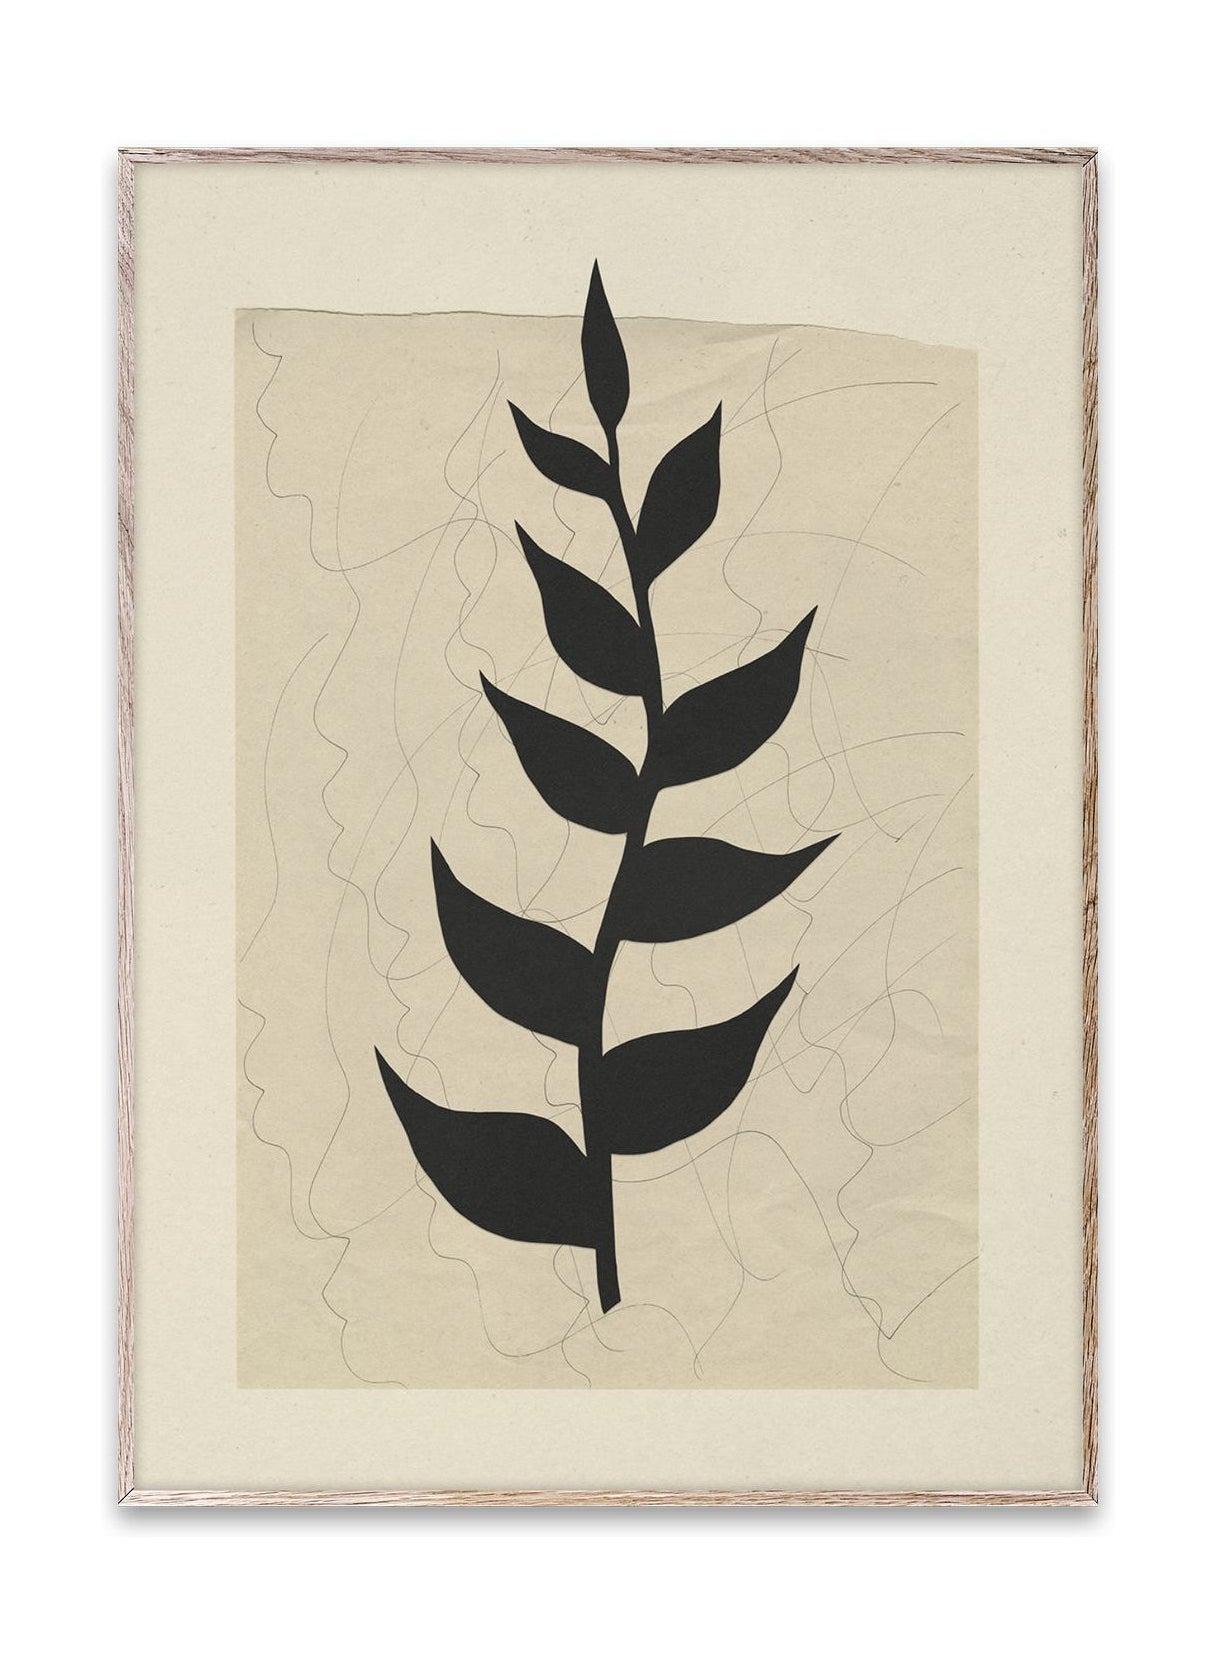 Pappers kollektiv växtdiktsaffisch, 50x70 cm